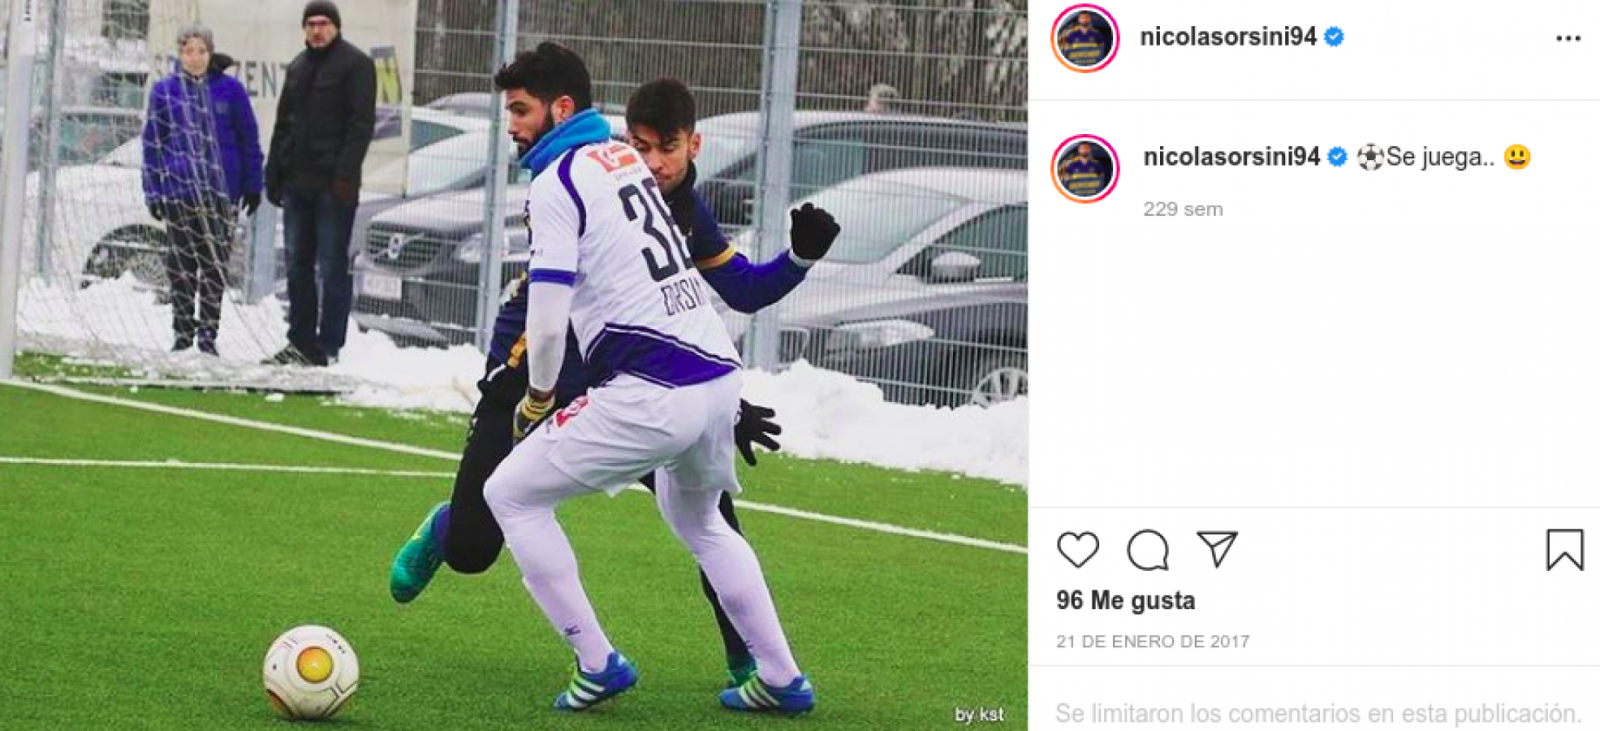 Imagen Orsini retrató el frio de Austria en su Instagram, fútbol, calzas y bufanda.